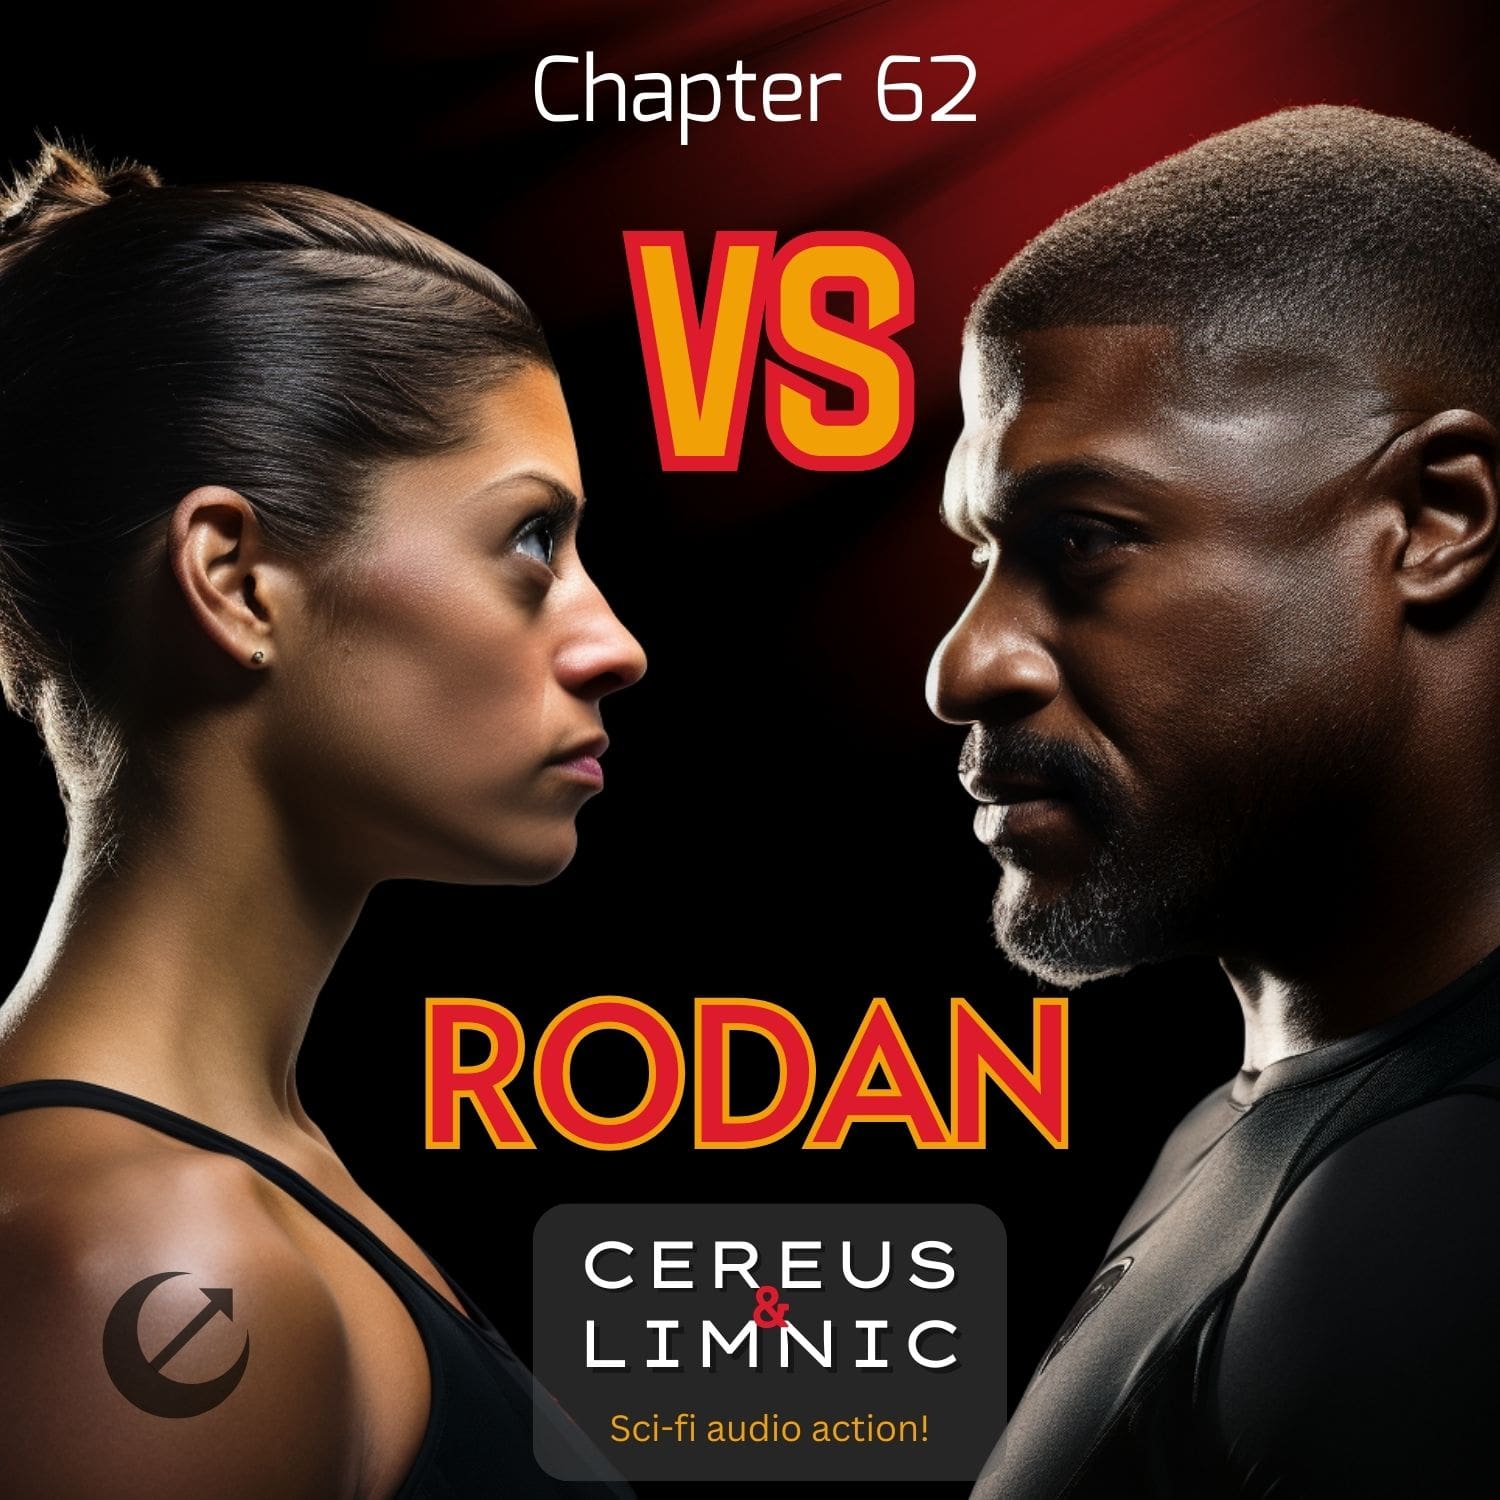 Chapter 62: Versus Rodan